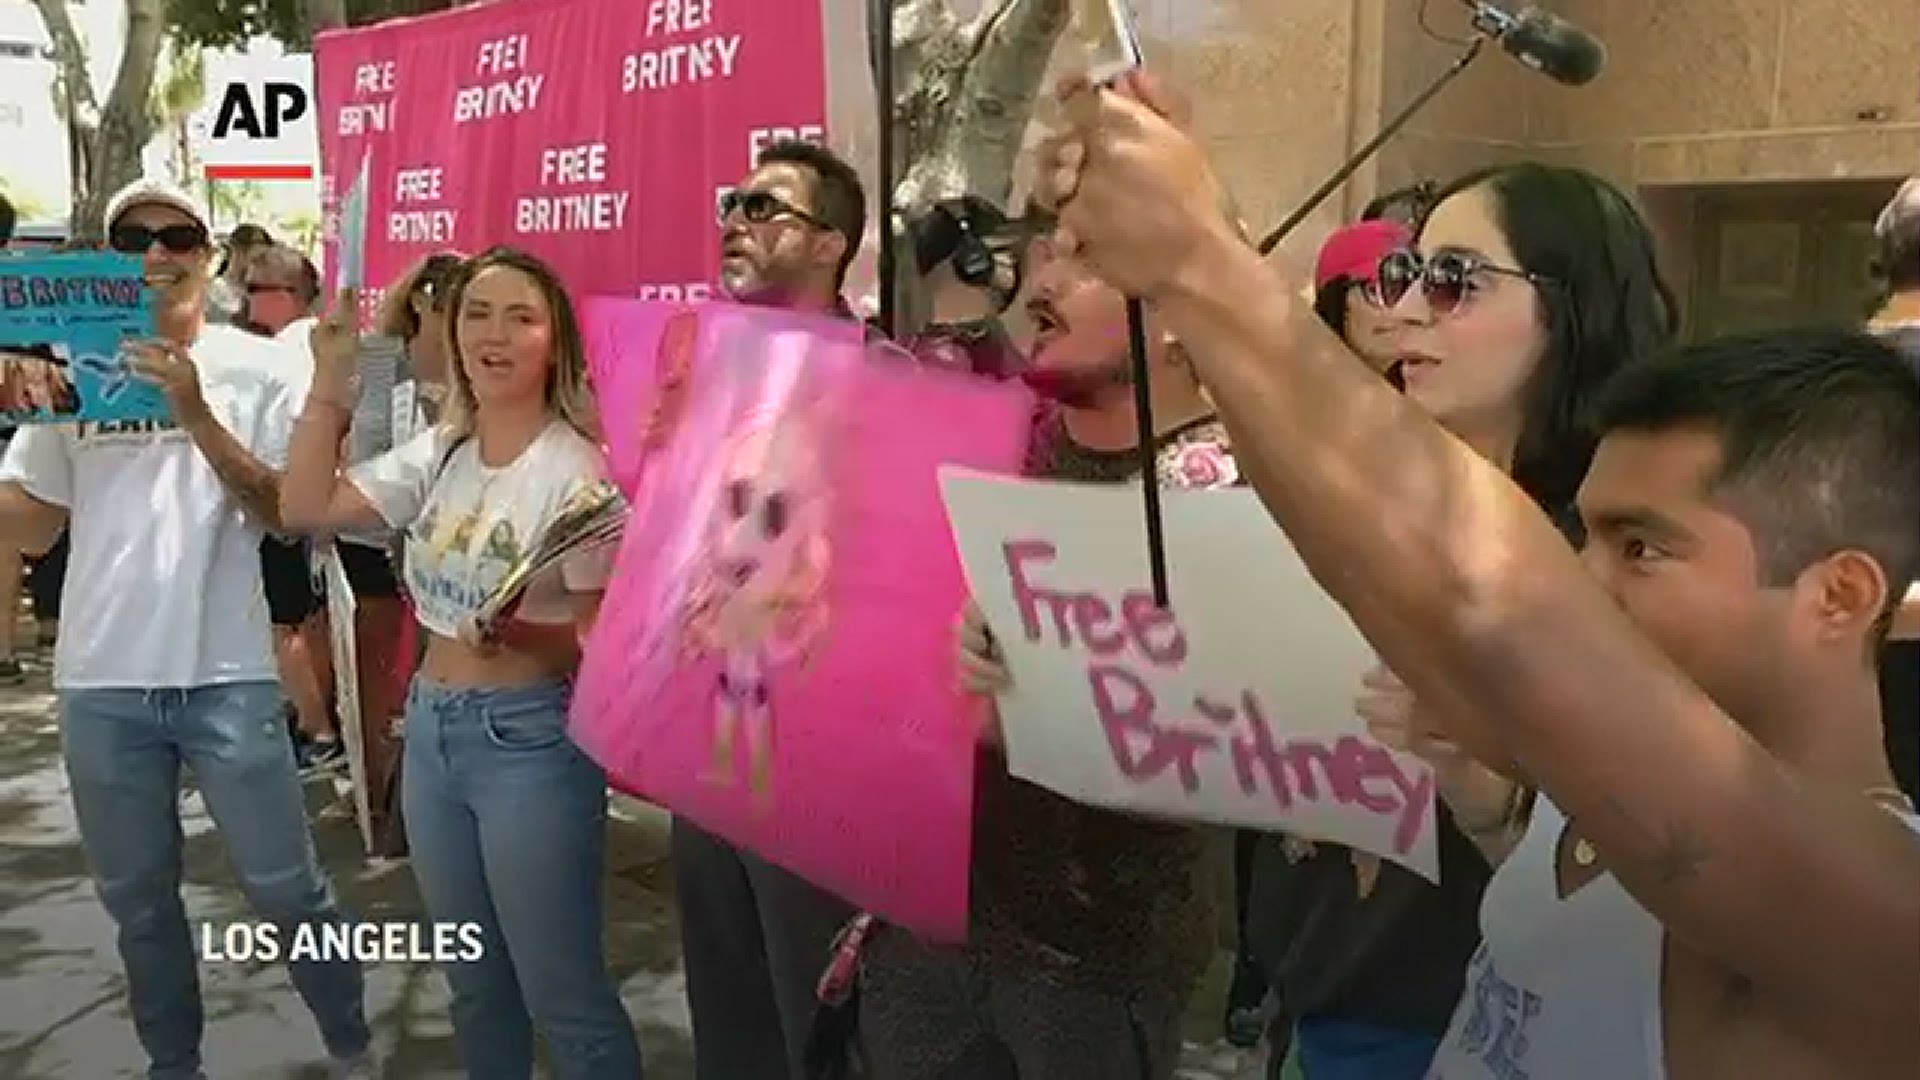 Spears' fans support outside | kiiitv.com